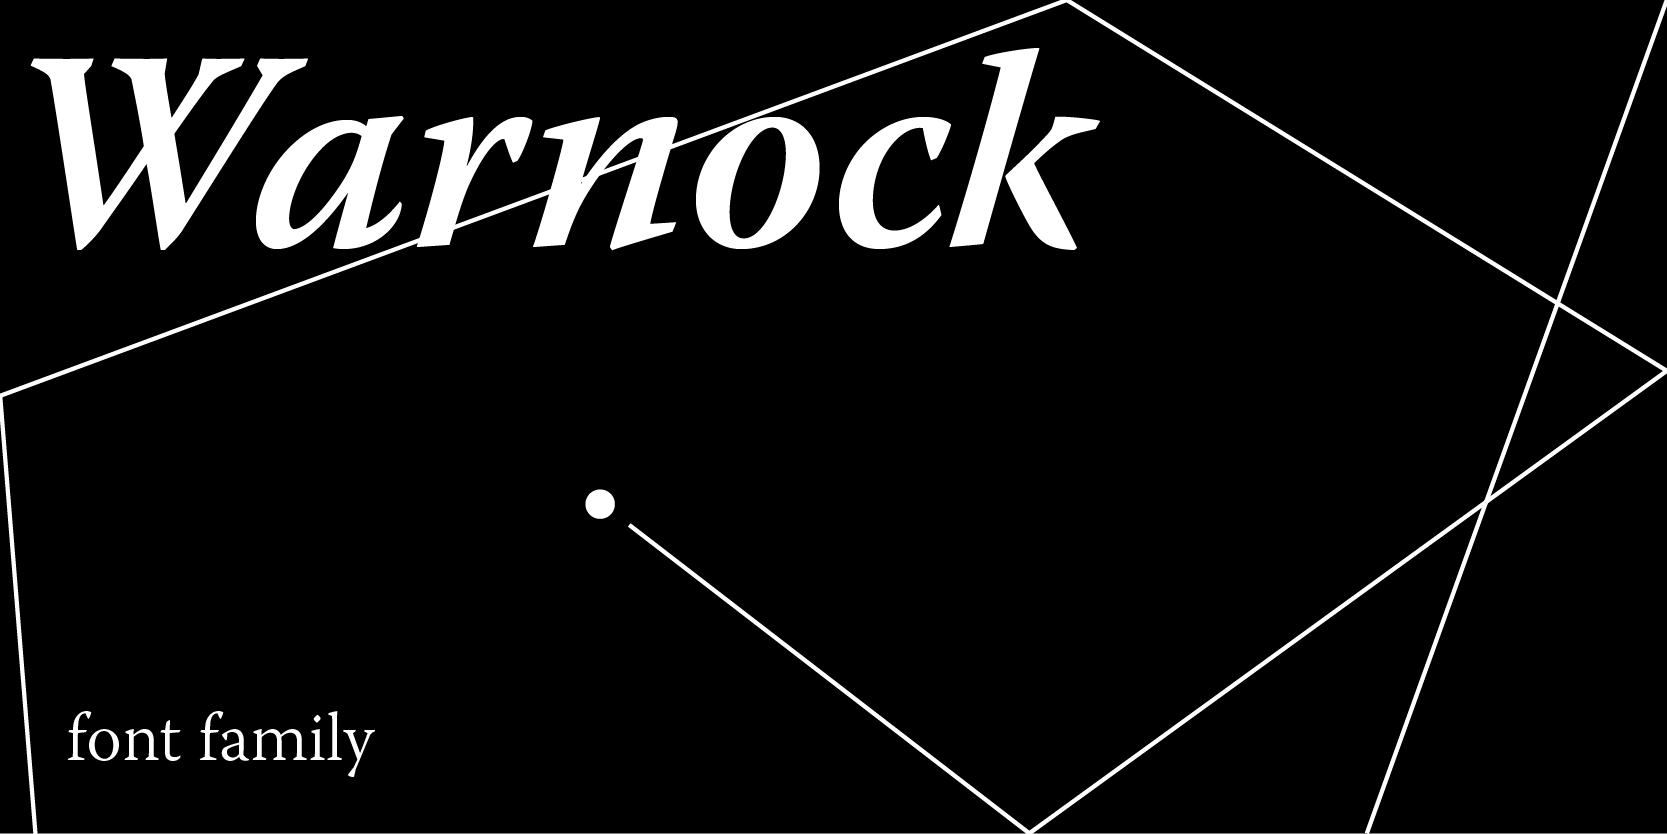 Co-fundador da Adobe ganhou fonte com seu nome, Warnock